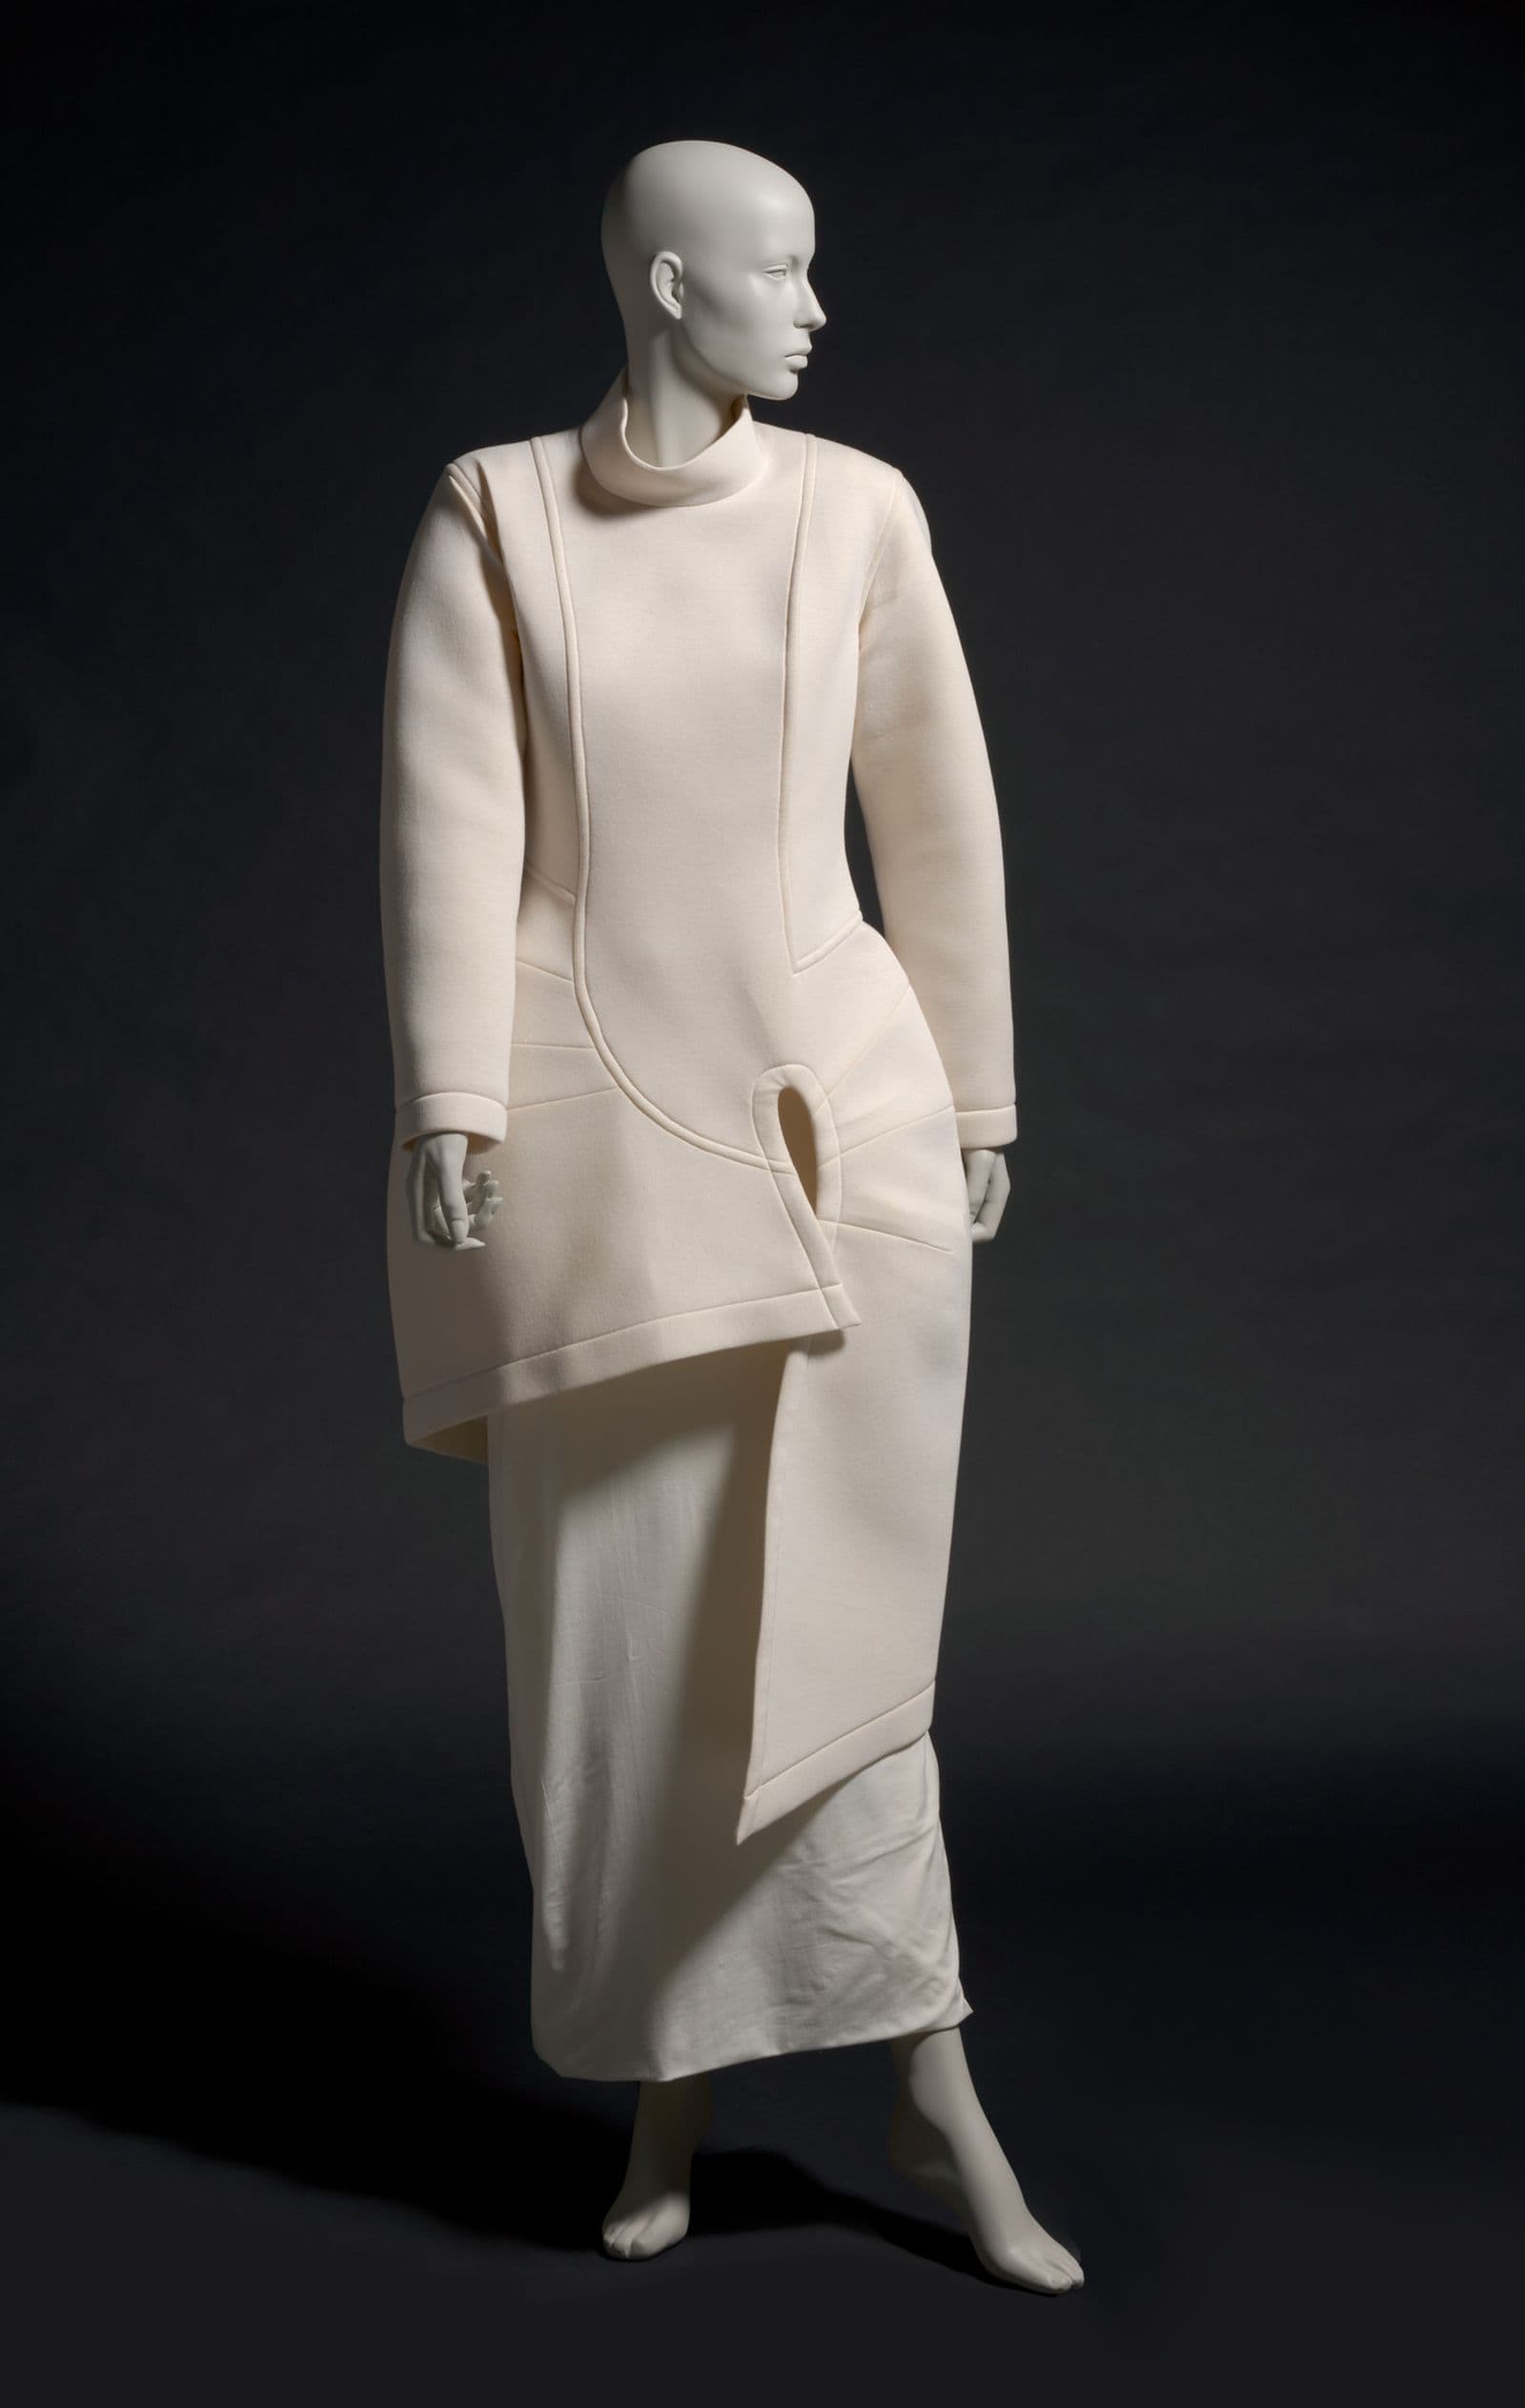 Photo of Avant Garde white dress and skirt on mannequin